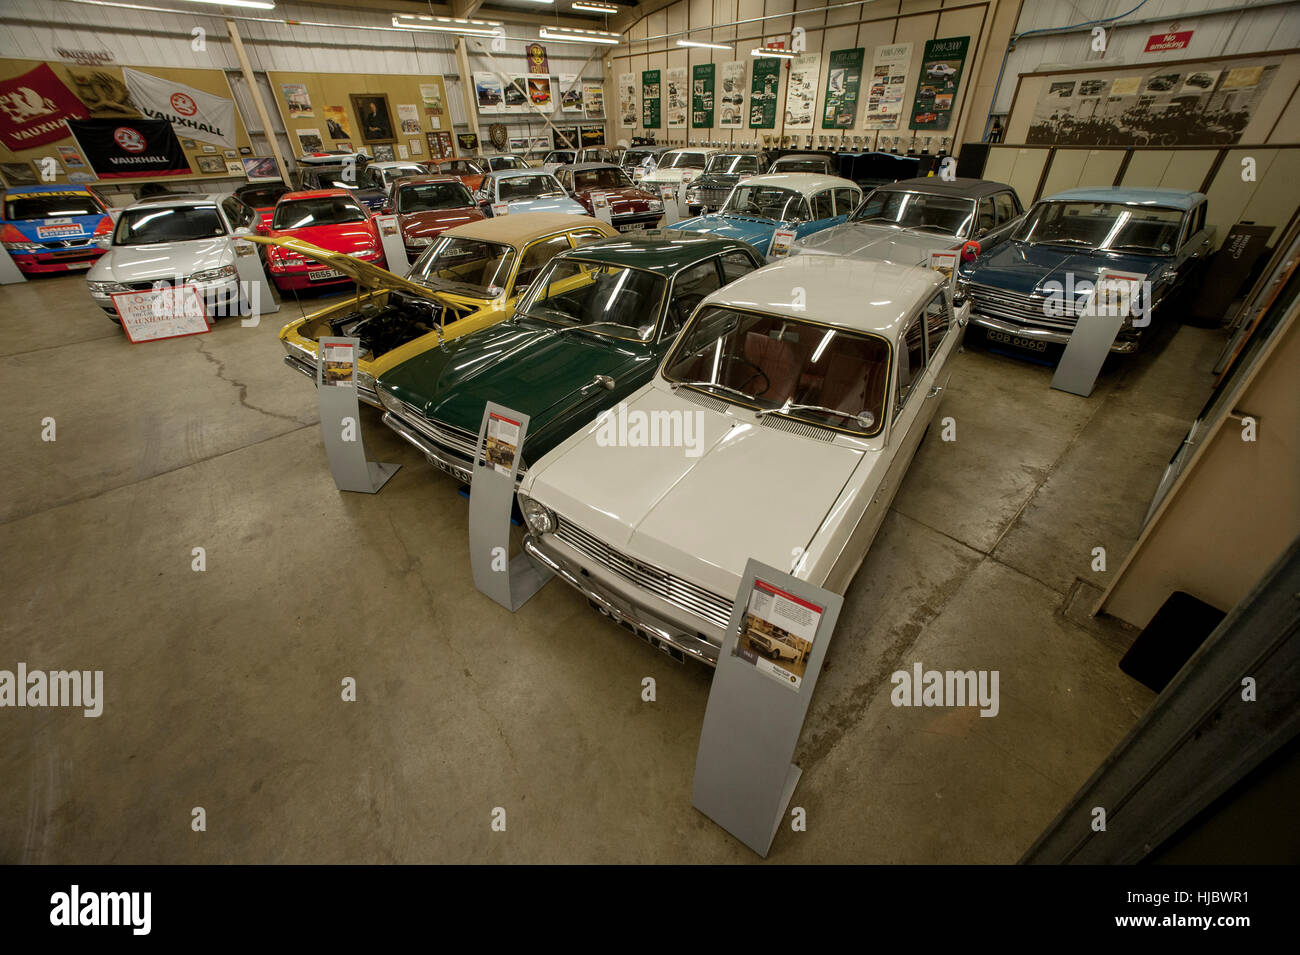 Coches clásicos de la colección patrimonial de Vauxhall mantiene a la fábrica de los fabricantes de coches en Luton, Inglaterra Foto de stock